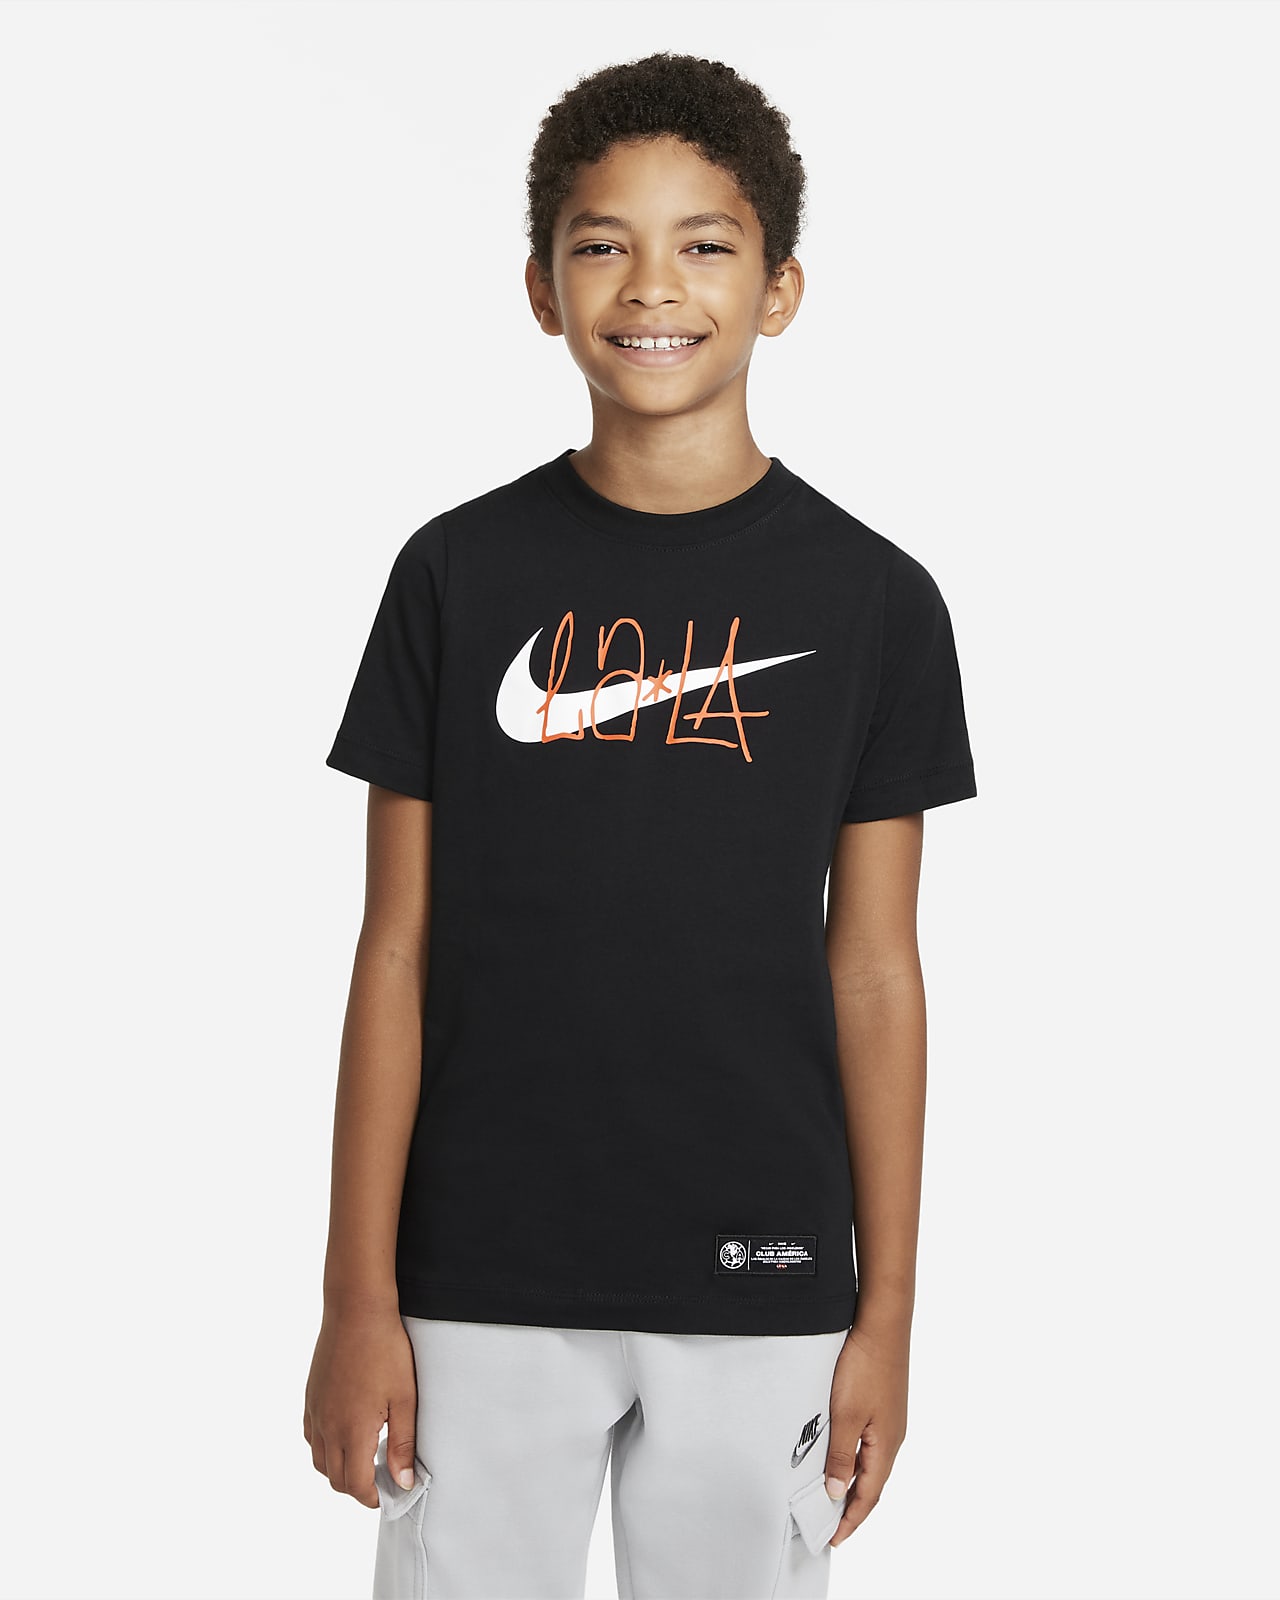 Club América Kids' Soccer T-Shirt. Nike.com